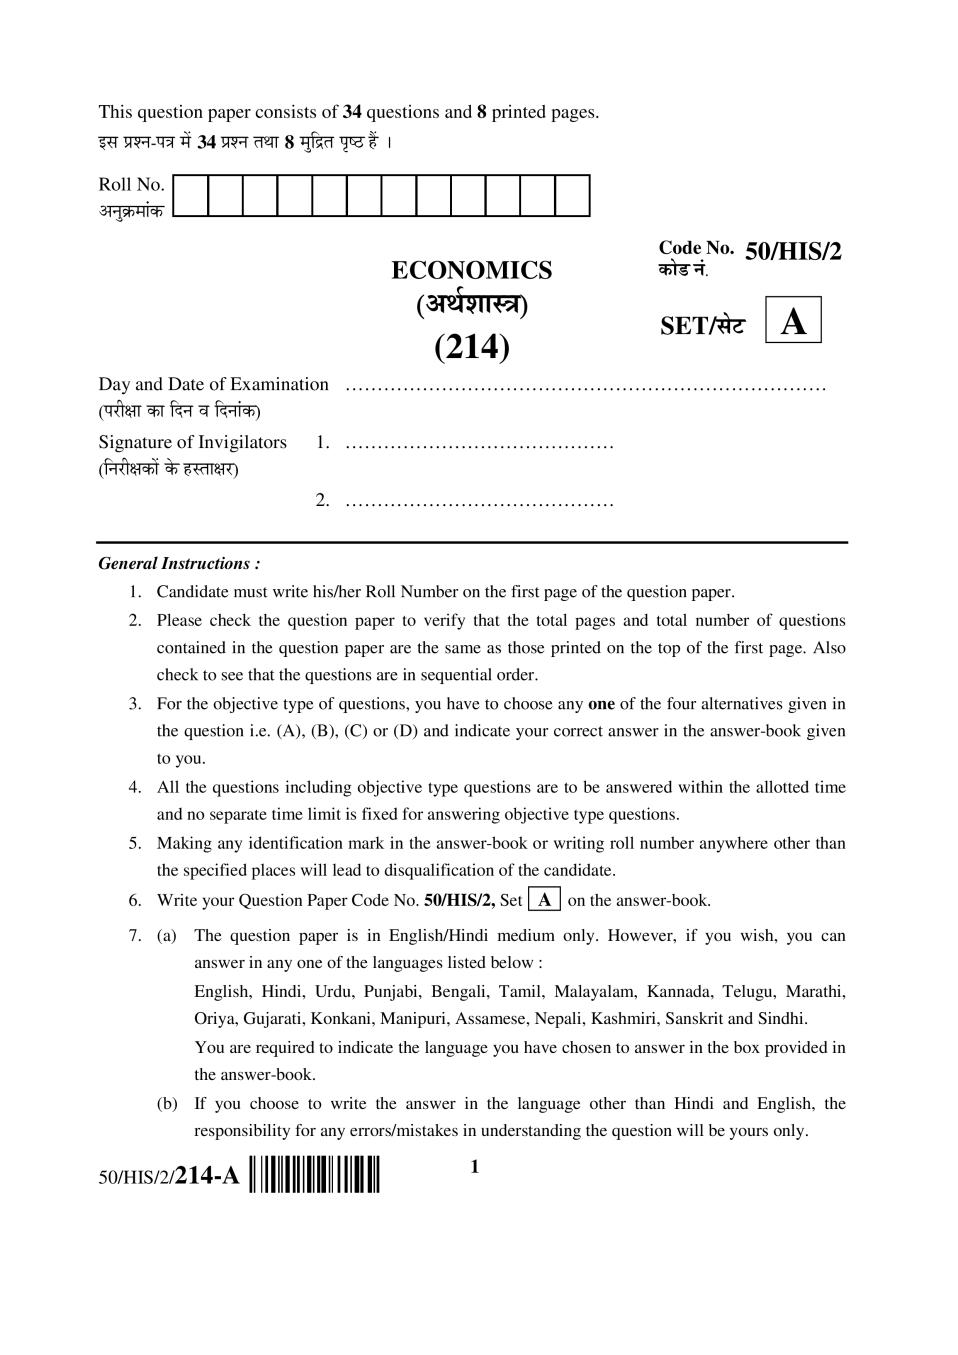 NIOS Class 10 Question Paper Apr 2015 - Economics - Page 1